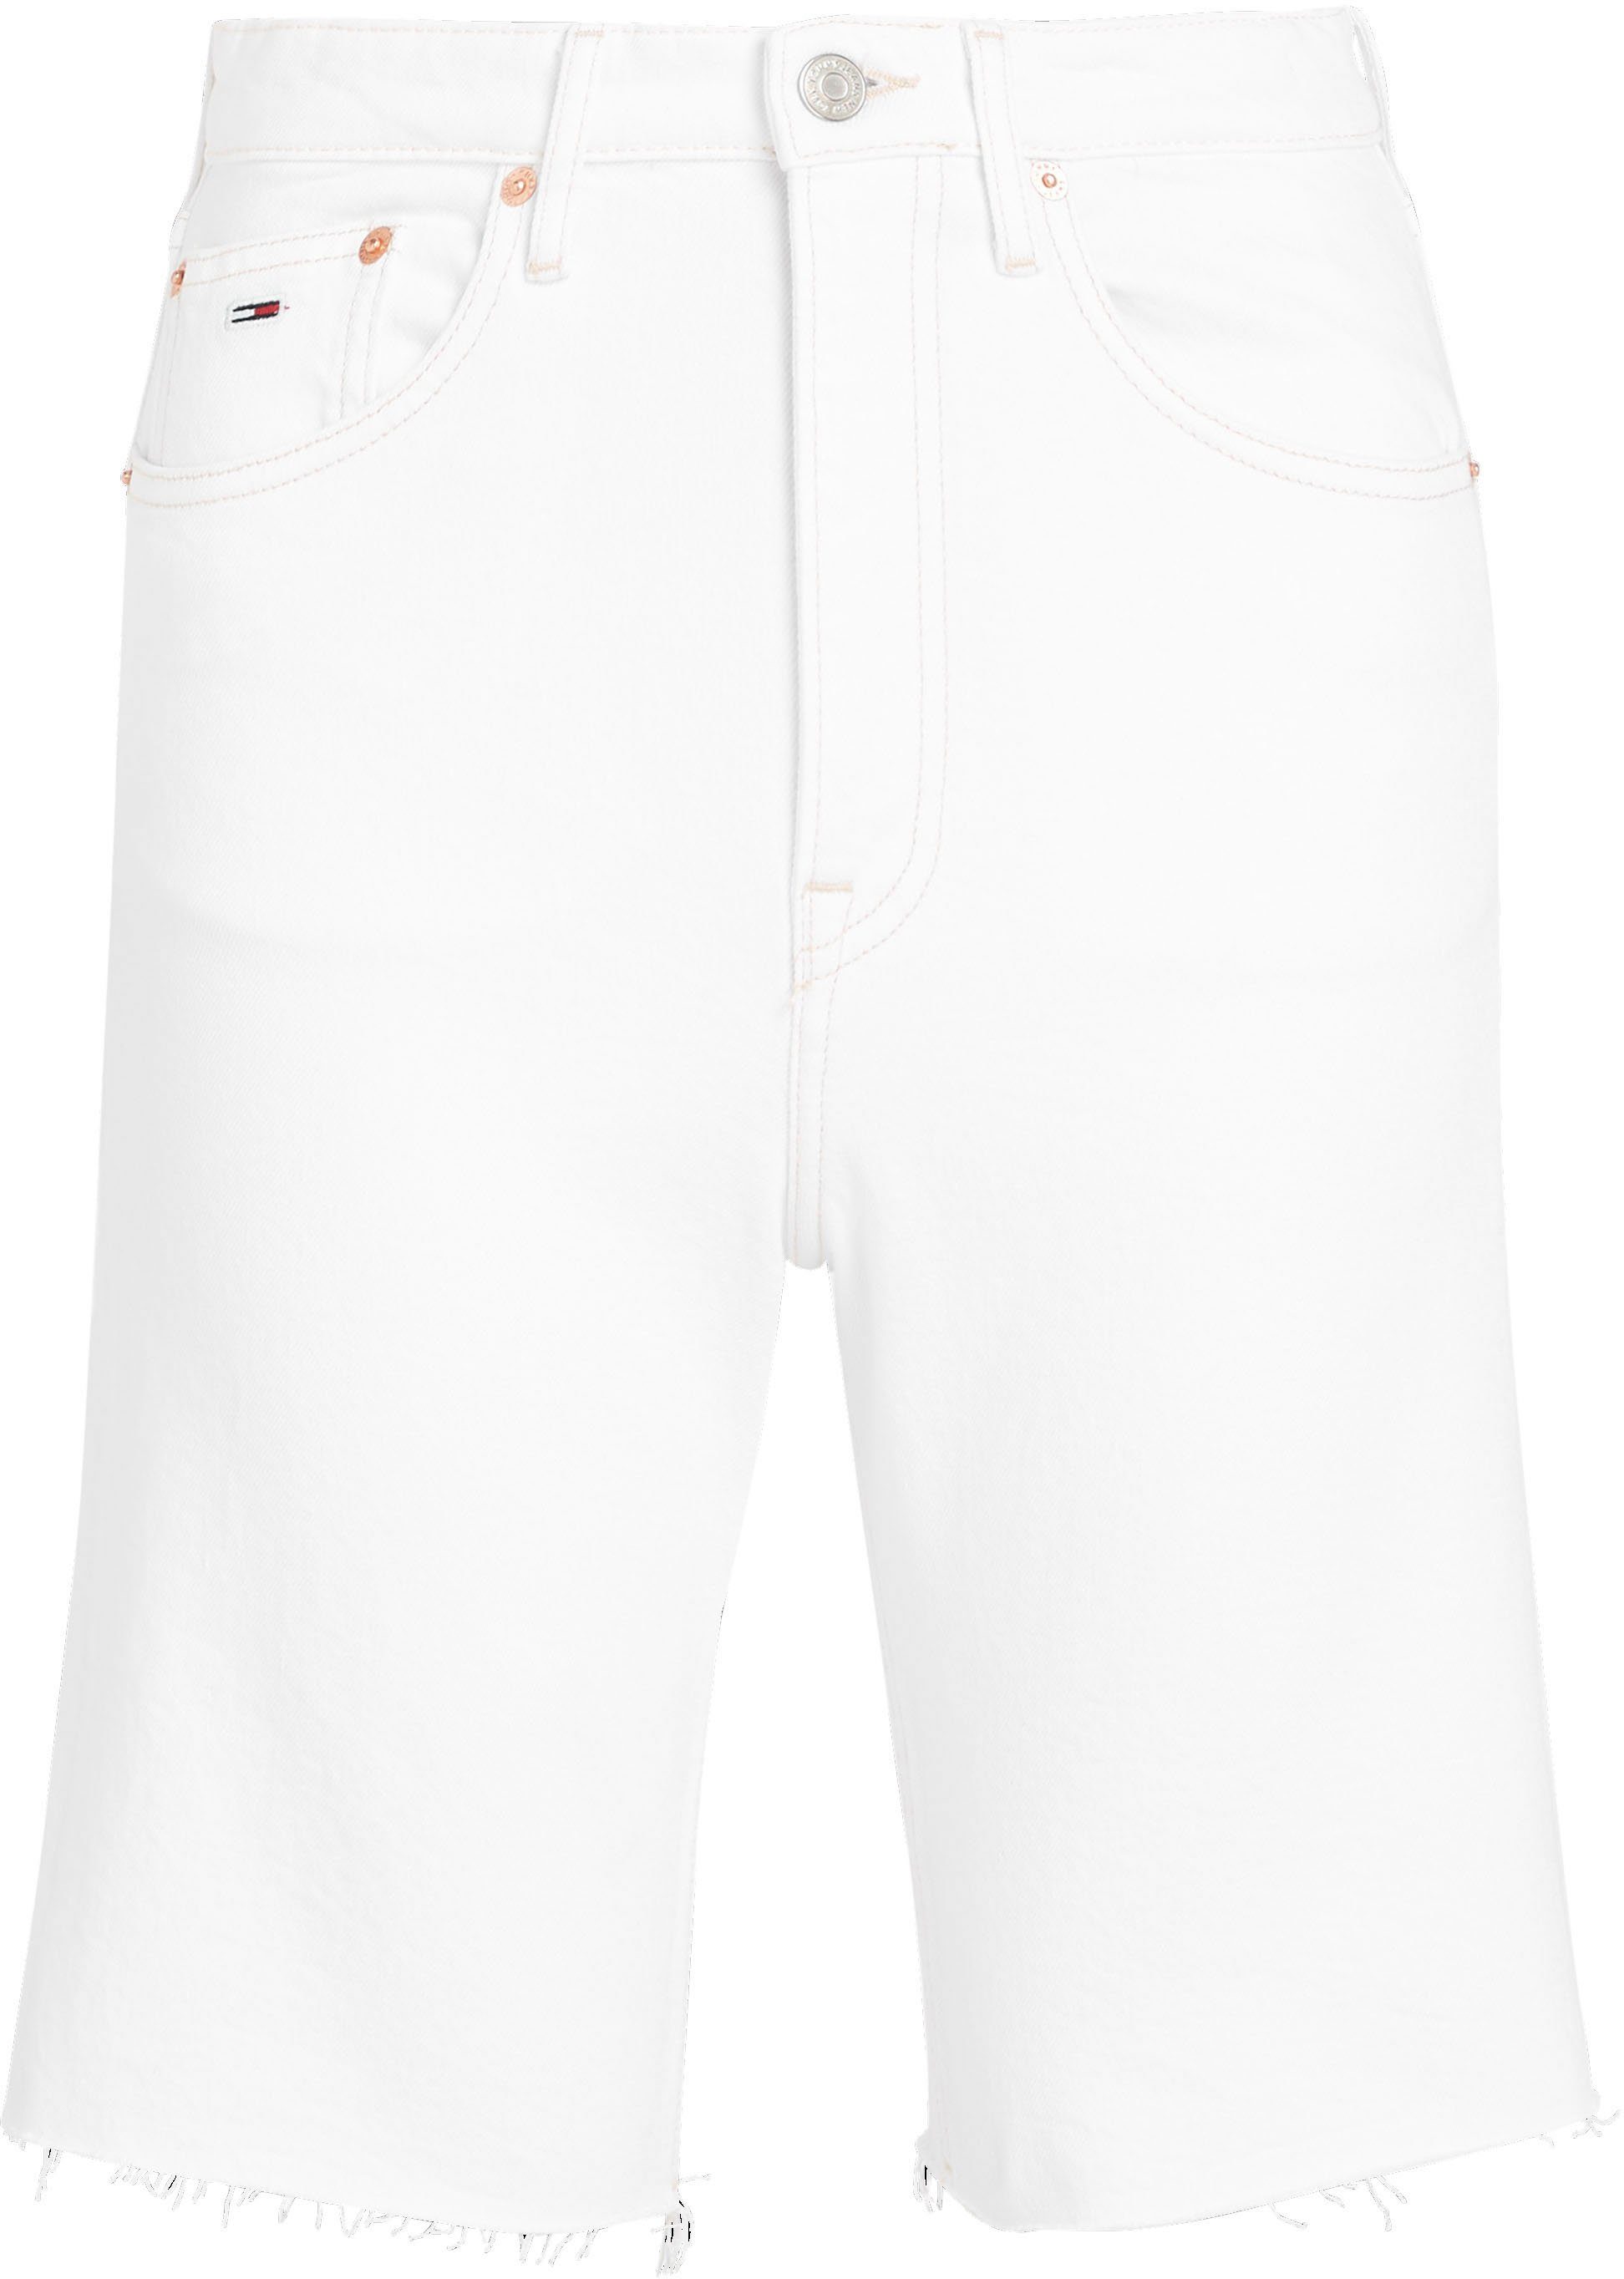 BG0196 Jeans im Tommy 5-Pocket-Style HR HARPER Bermudas BERMUDA